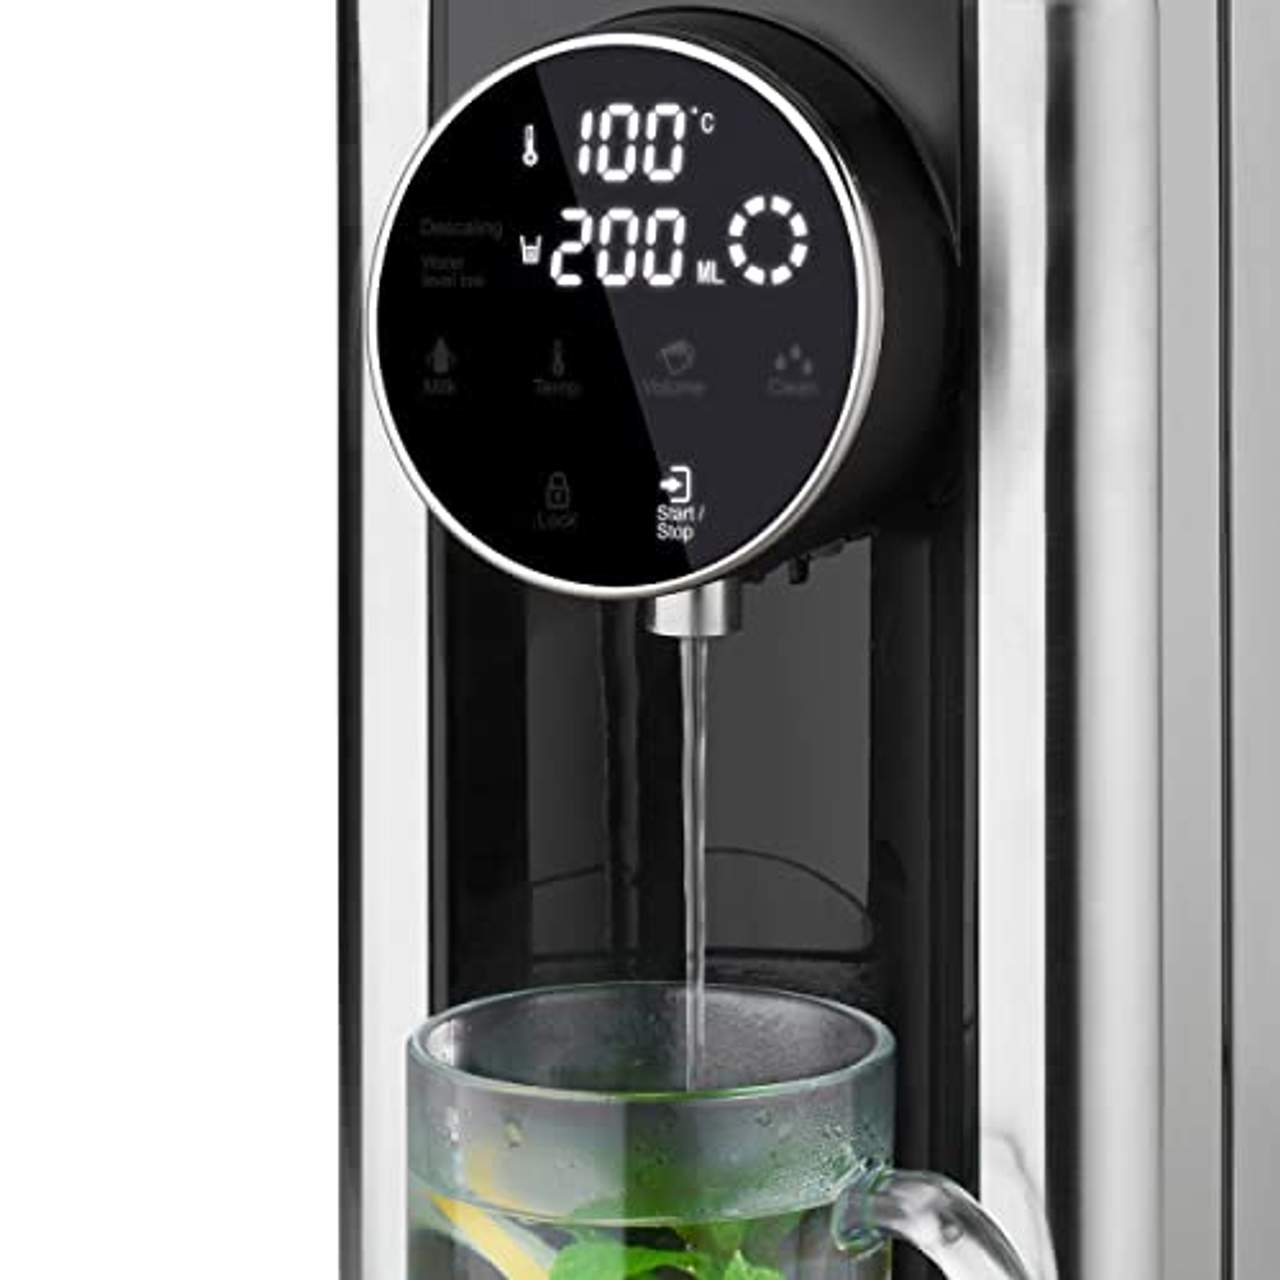 Heinrich´s Heißwasserspender-Heißes Wasser auf Knopfdruck zwischen 40°-100°C